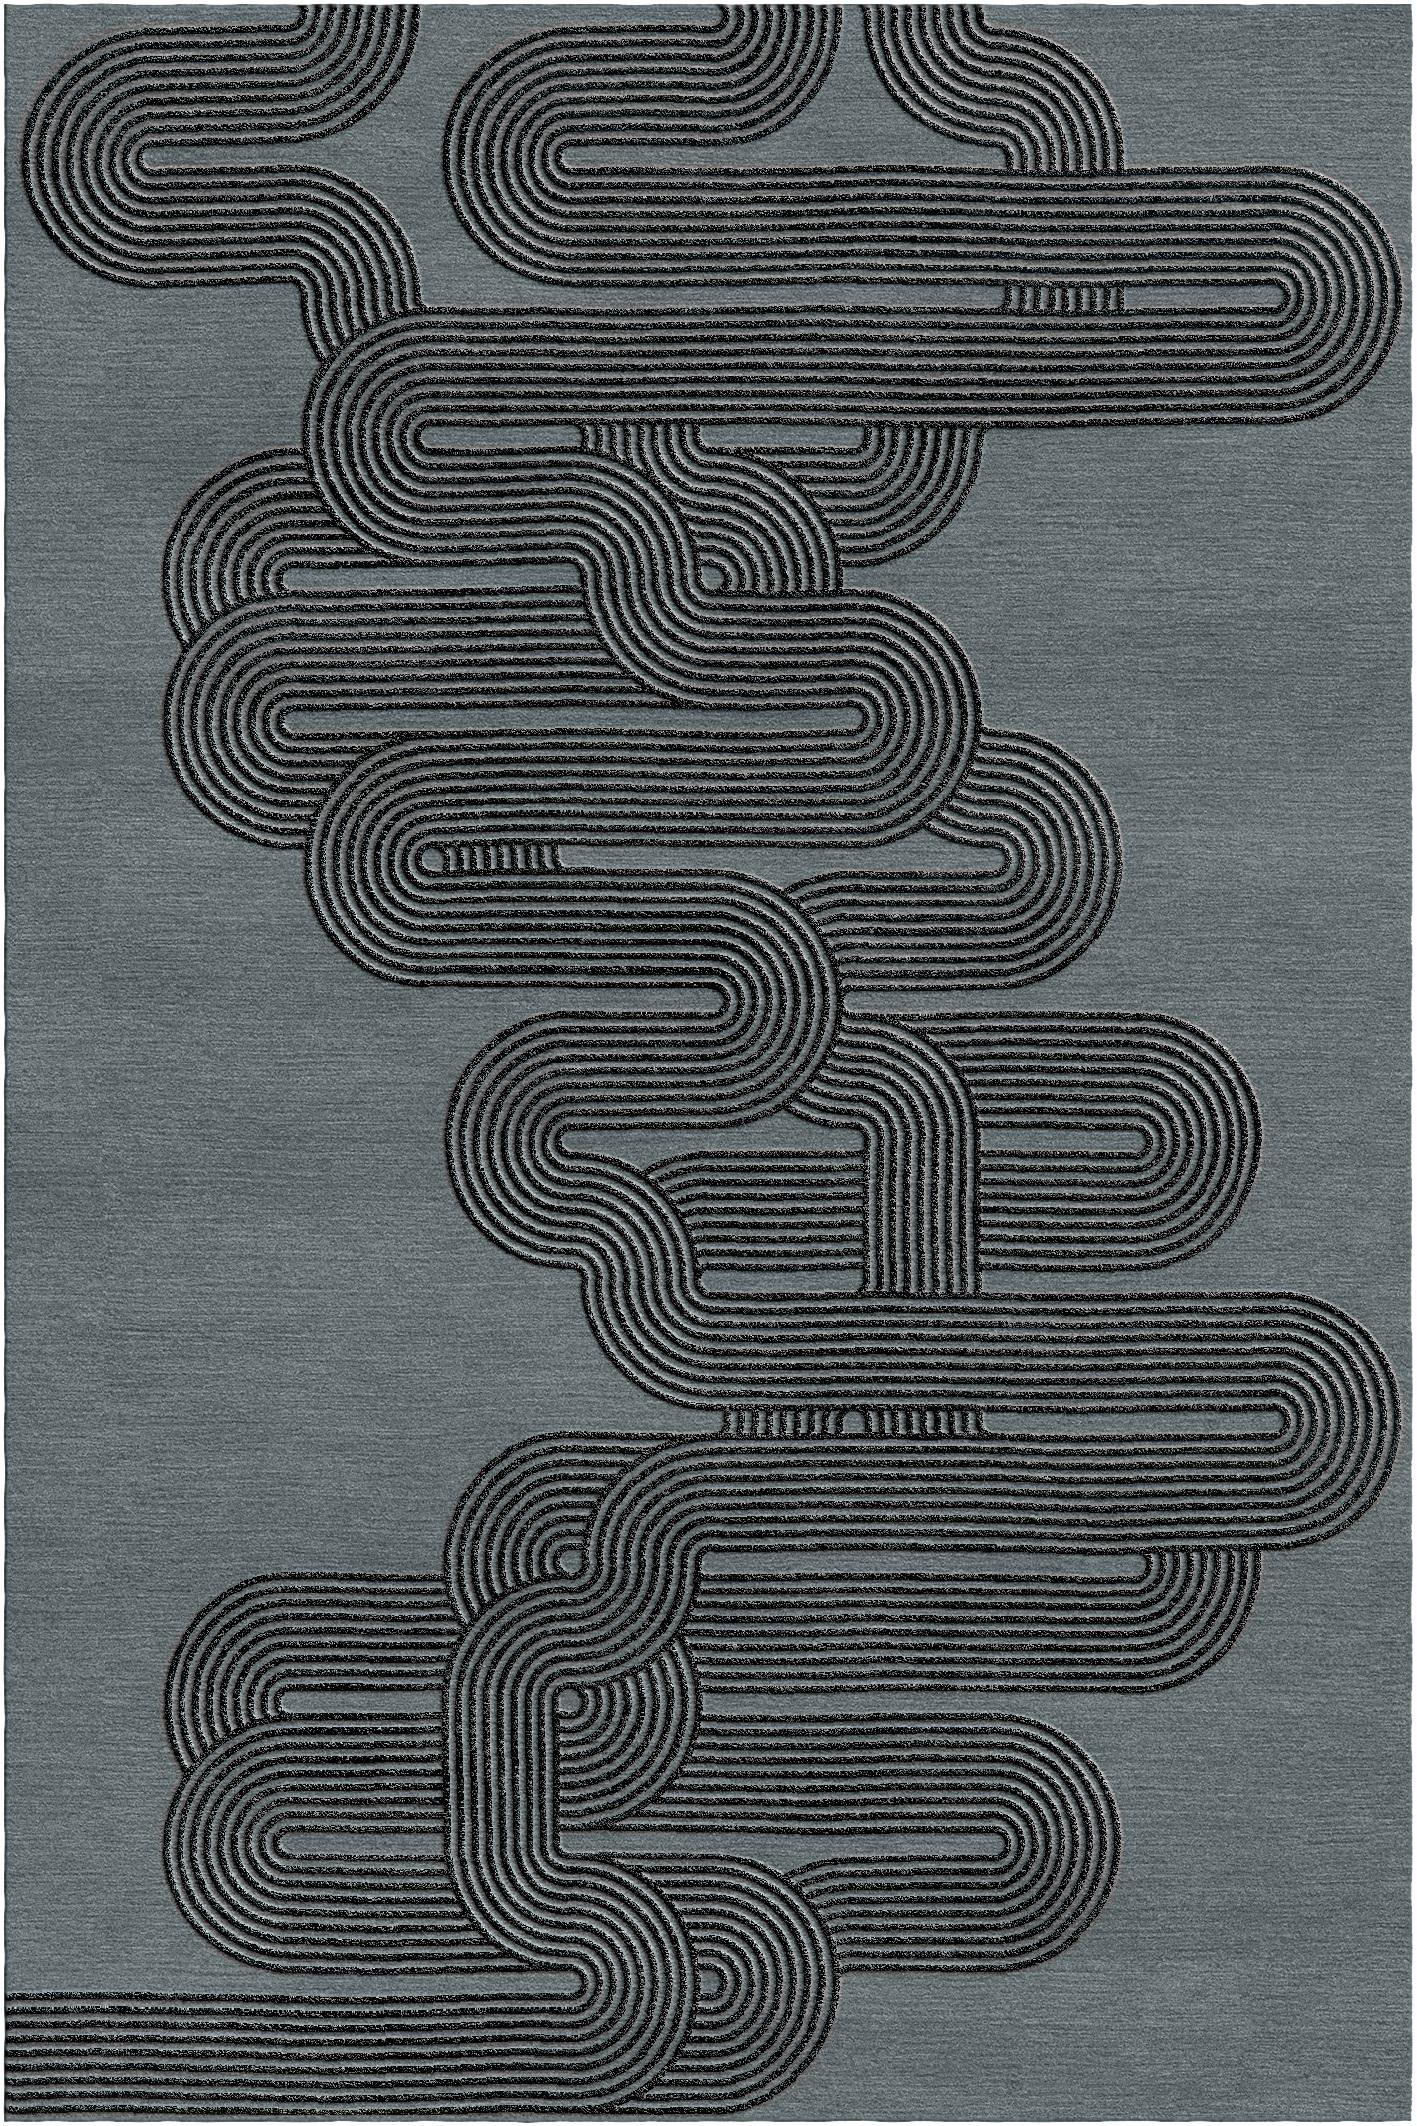 Kurventeppich II von Giulio Brambilla
Abmessungen: D 300 x B 200 x H 1,5 cm
MATERIALIEN: NZ-Wolle, Bambusseide
Erhältlich in anderen Farben.

Dieser Teppich des Künstlers und Architekten Giulio Brambilla ist ein auffälliges Design mit starker